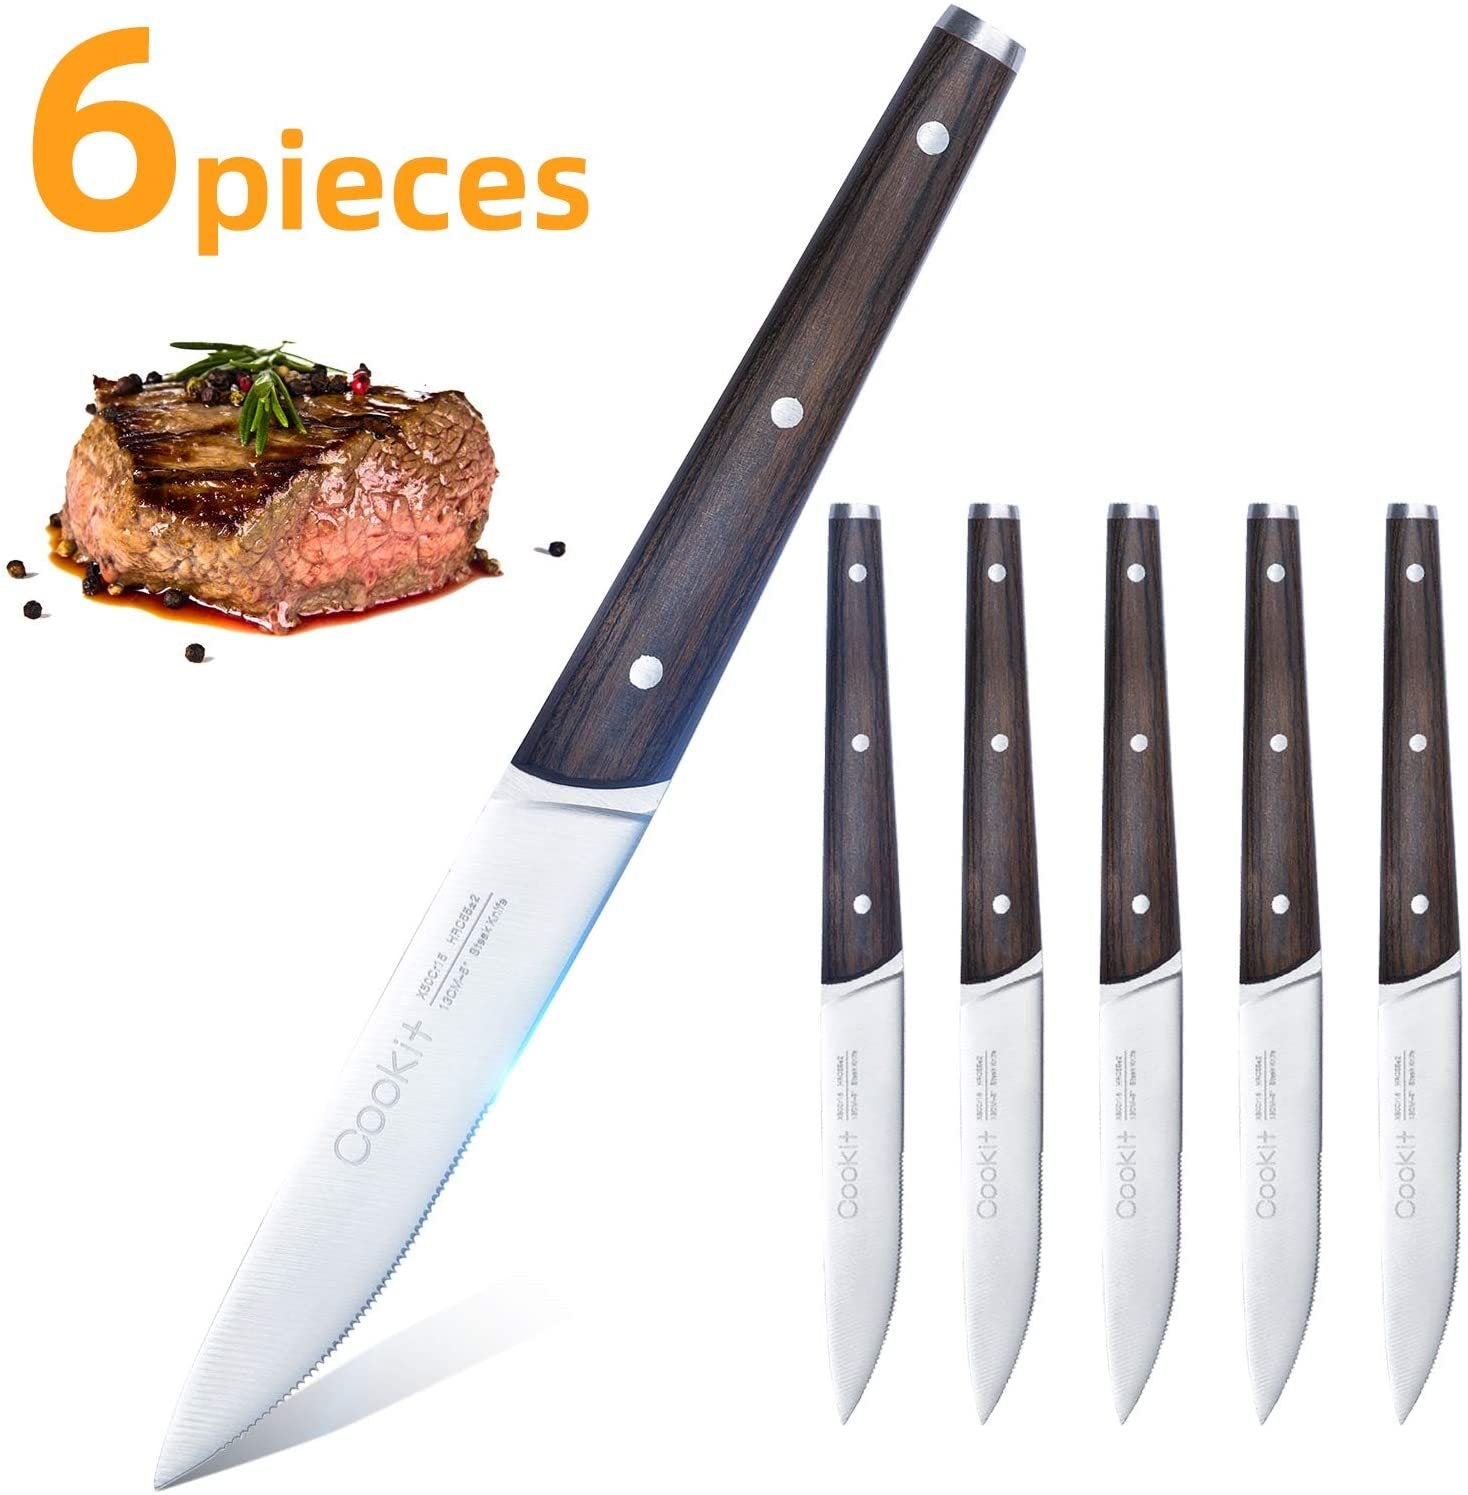 Juego de cuchillos para carne de 6 piezas dentados de acero inoxidable